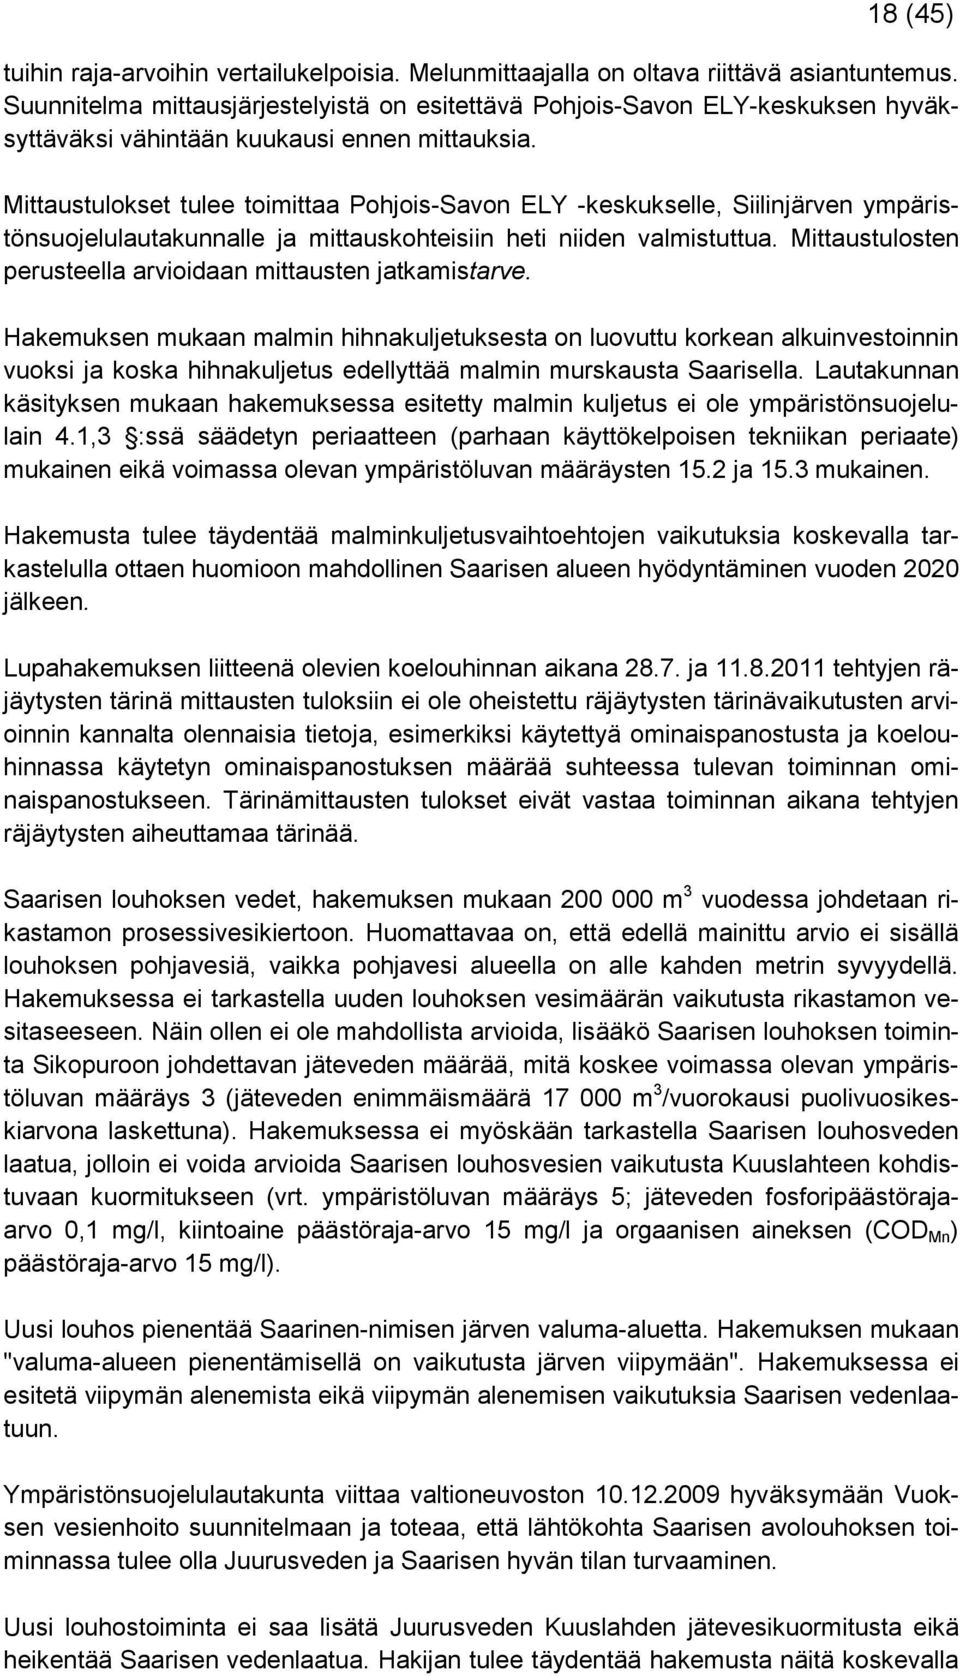 Mittaustulokset tulee toimittaa Pohjois-Savon ELY -keskukselle, Siilinjärven ympäristönsuojelulautakunnalle ja mittauskohteisiin heti niiden valmistuttua.